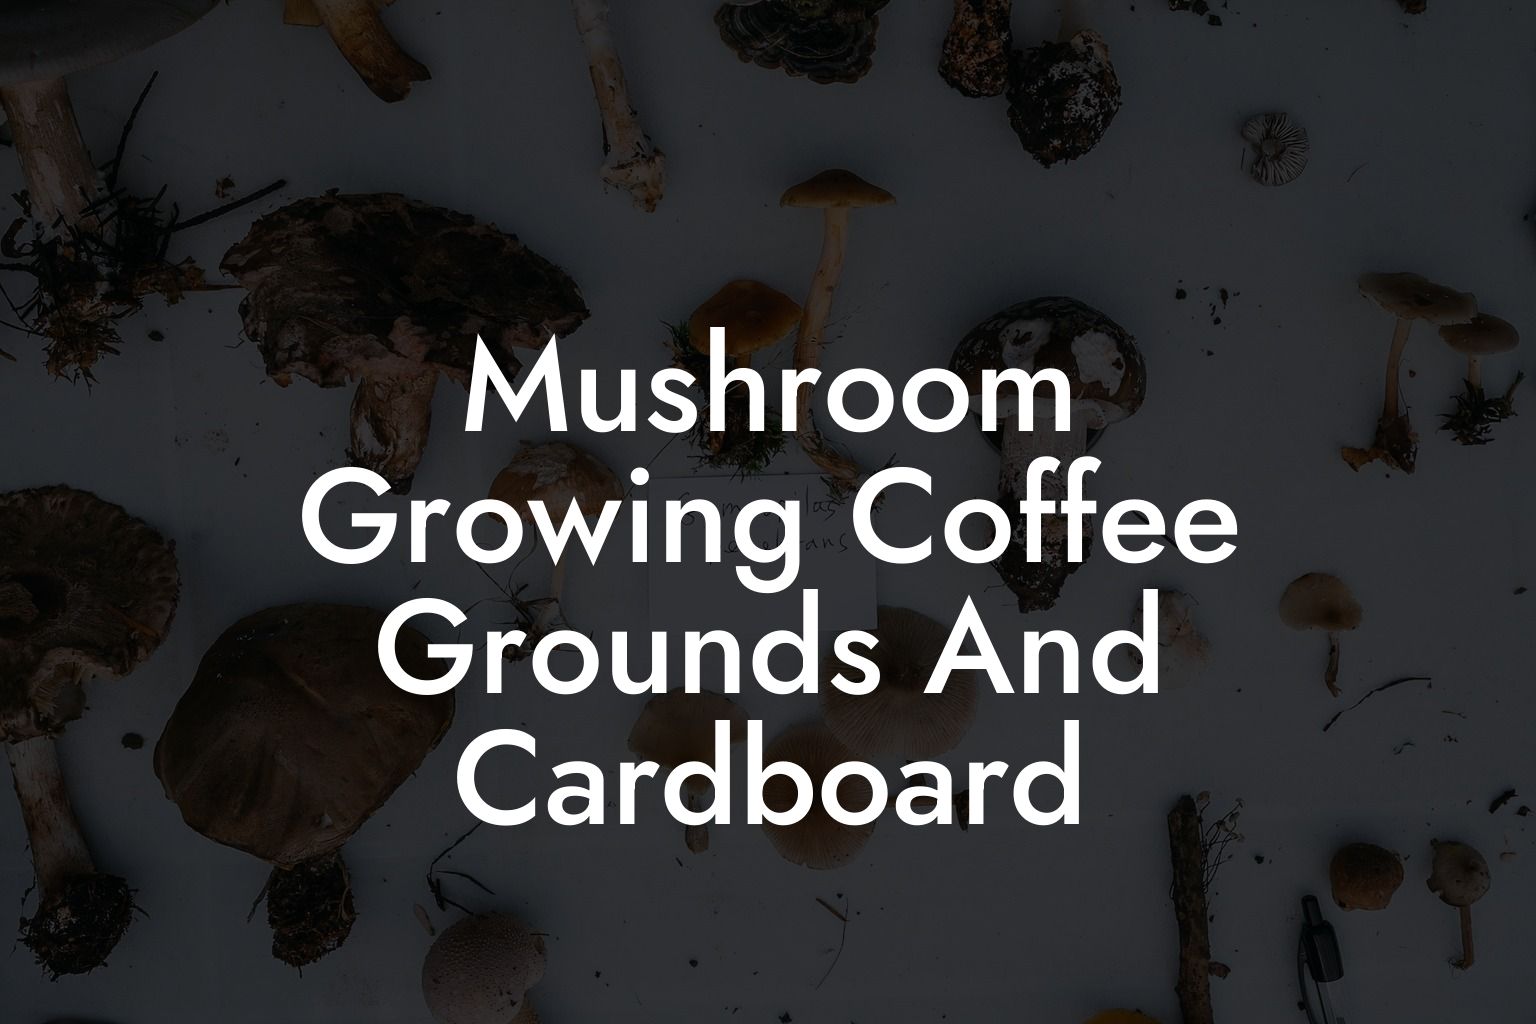 Mushroom Growing Coffee Grounds And Cardboard